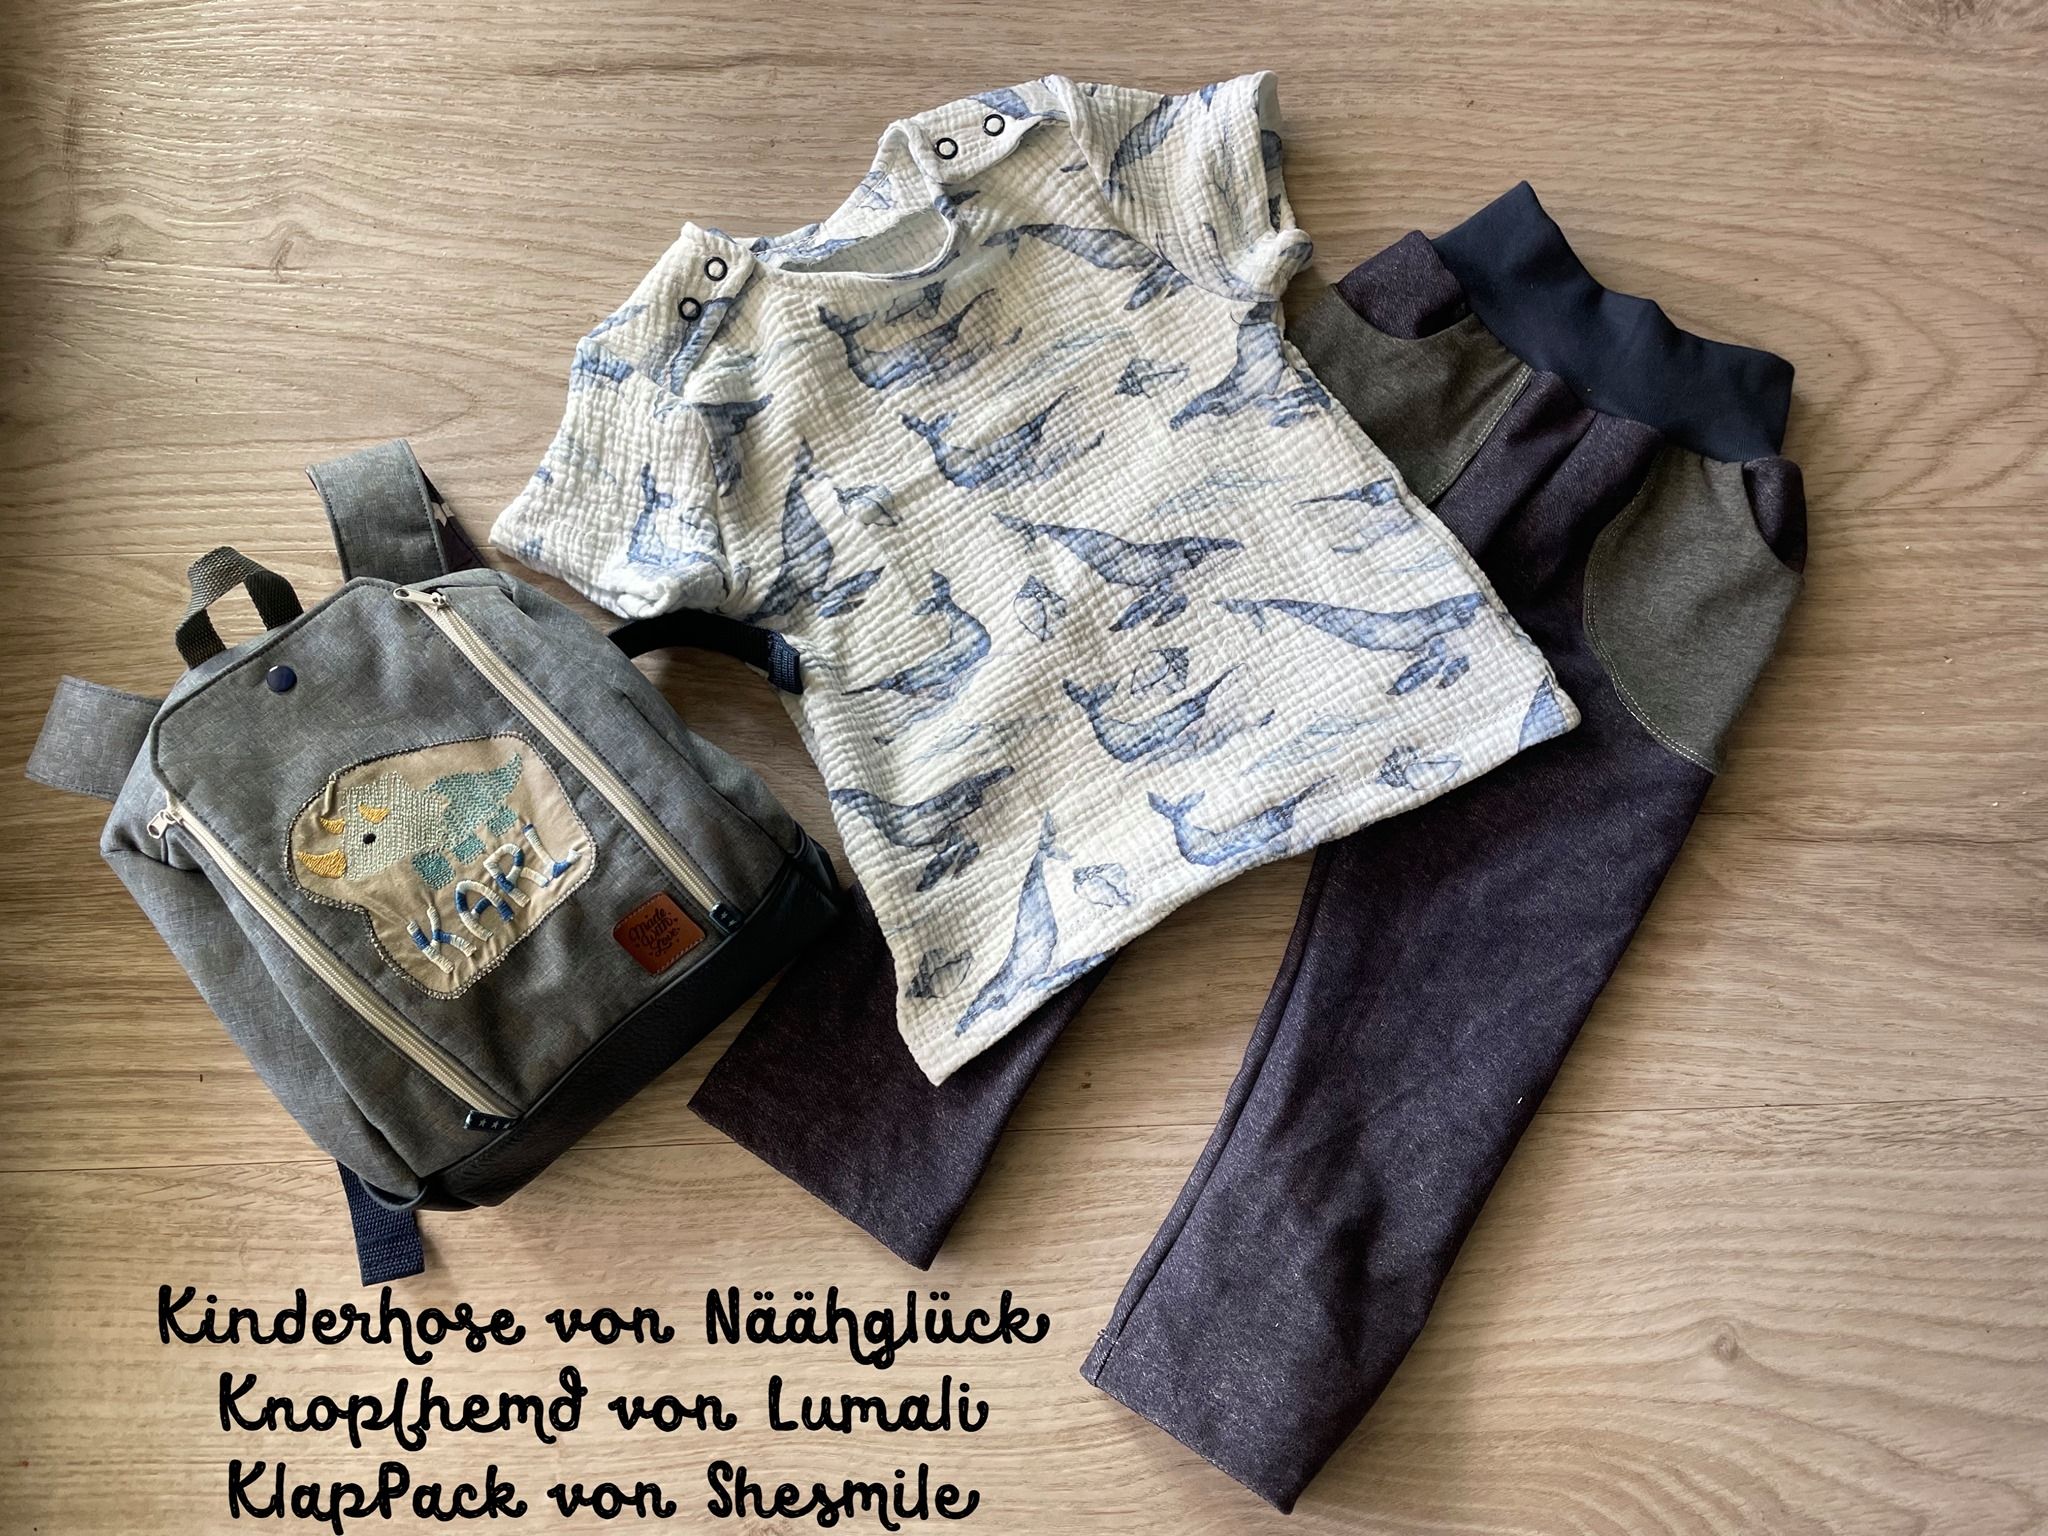 Jana Borbe hat genäht von shesmile den Rucksack "KlapPack". Außerdem eine Kinderhose von Näähglück DIY und ein Knopfhemd von Lumali.